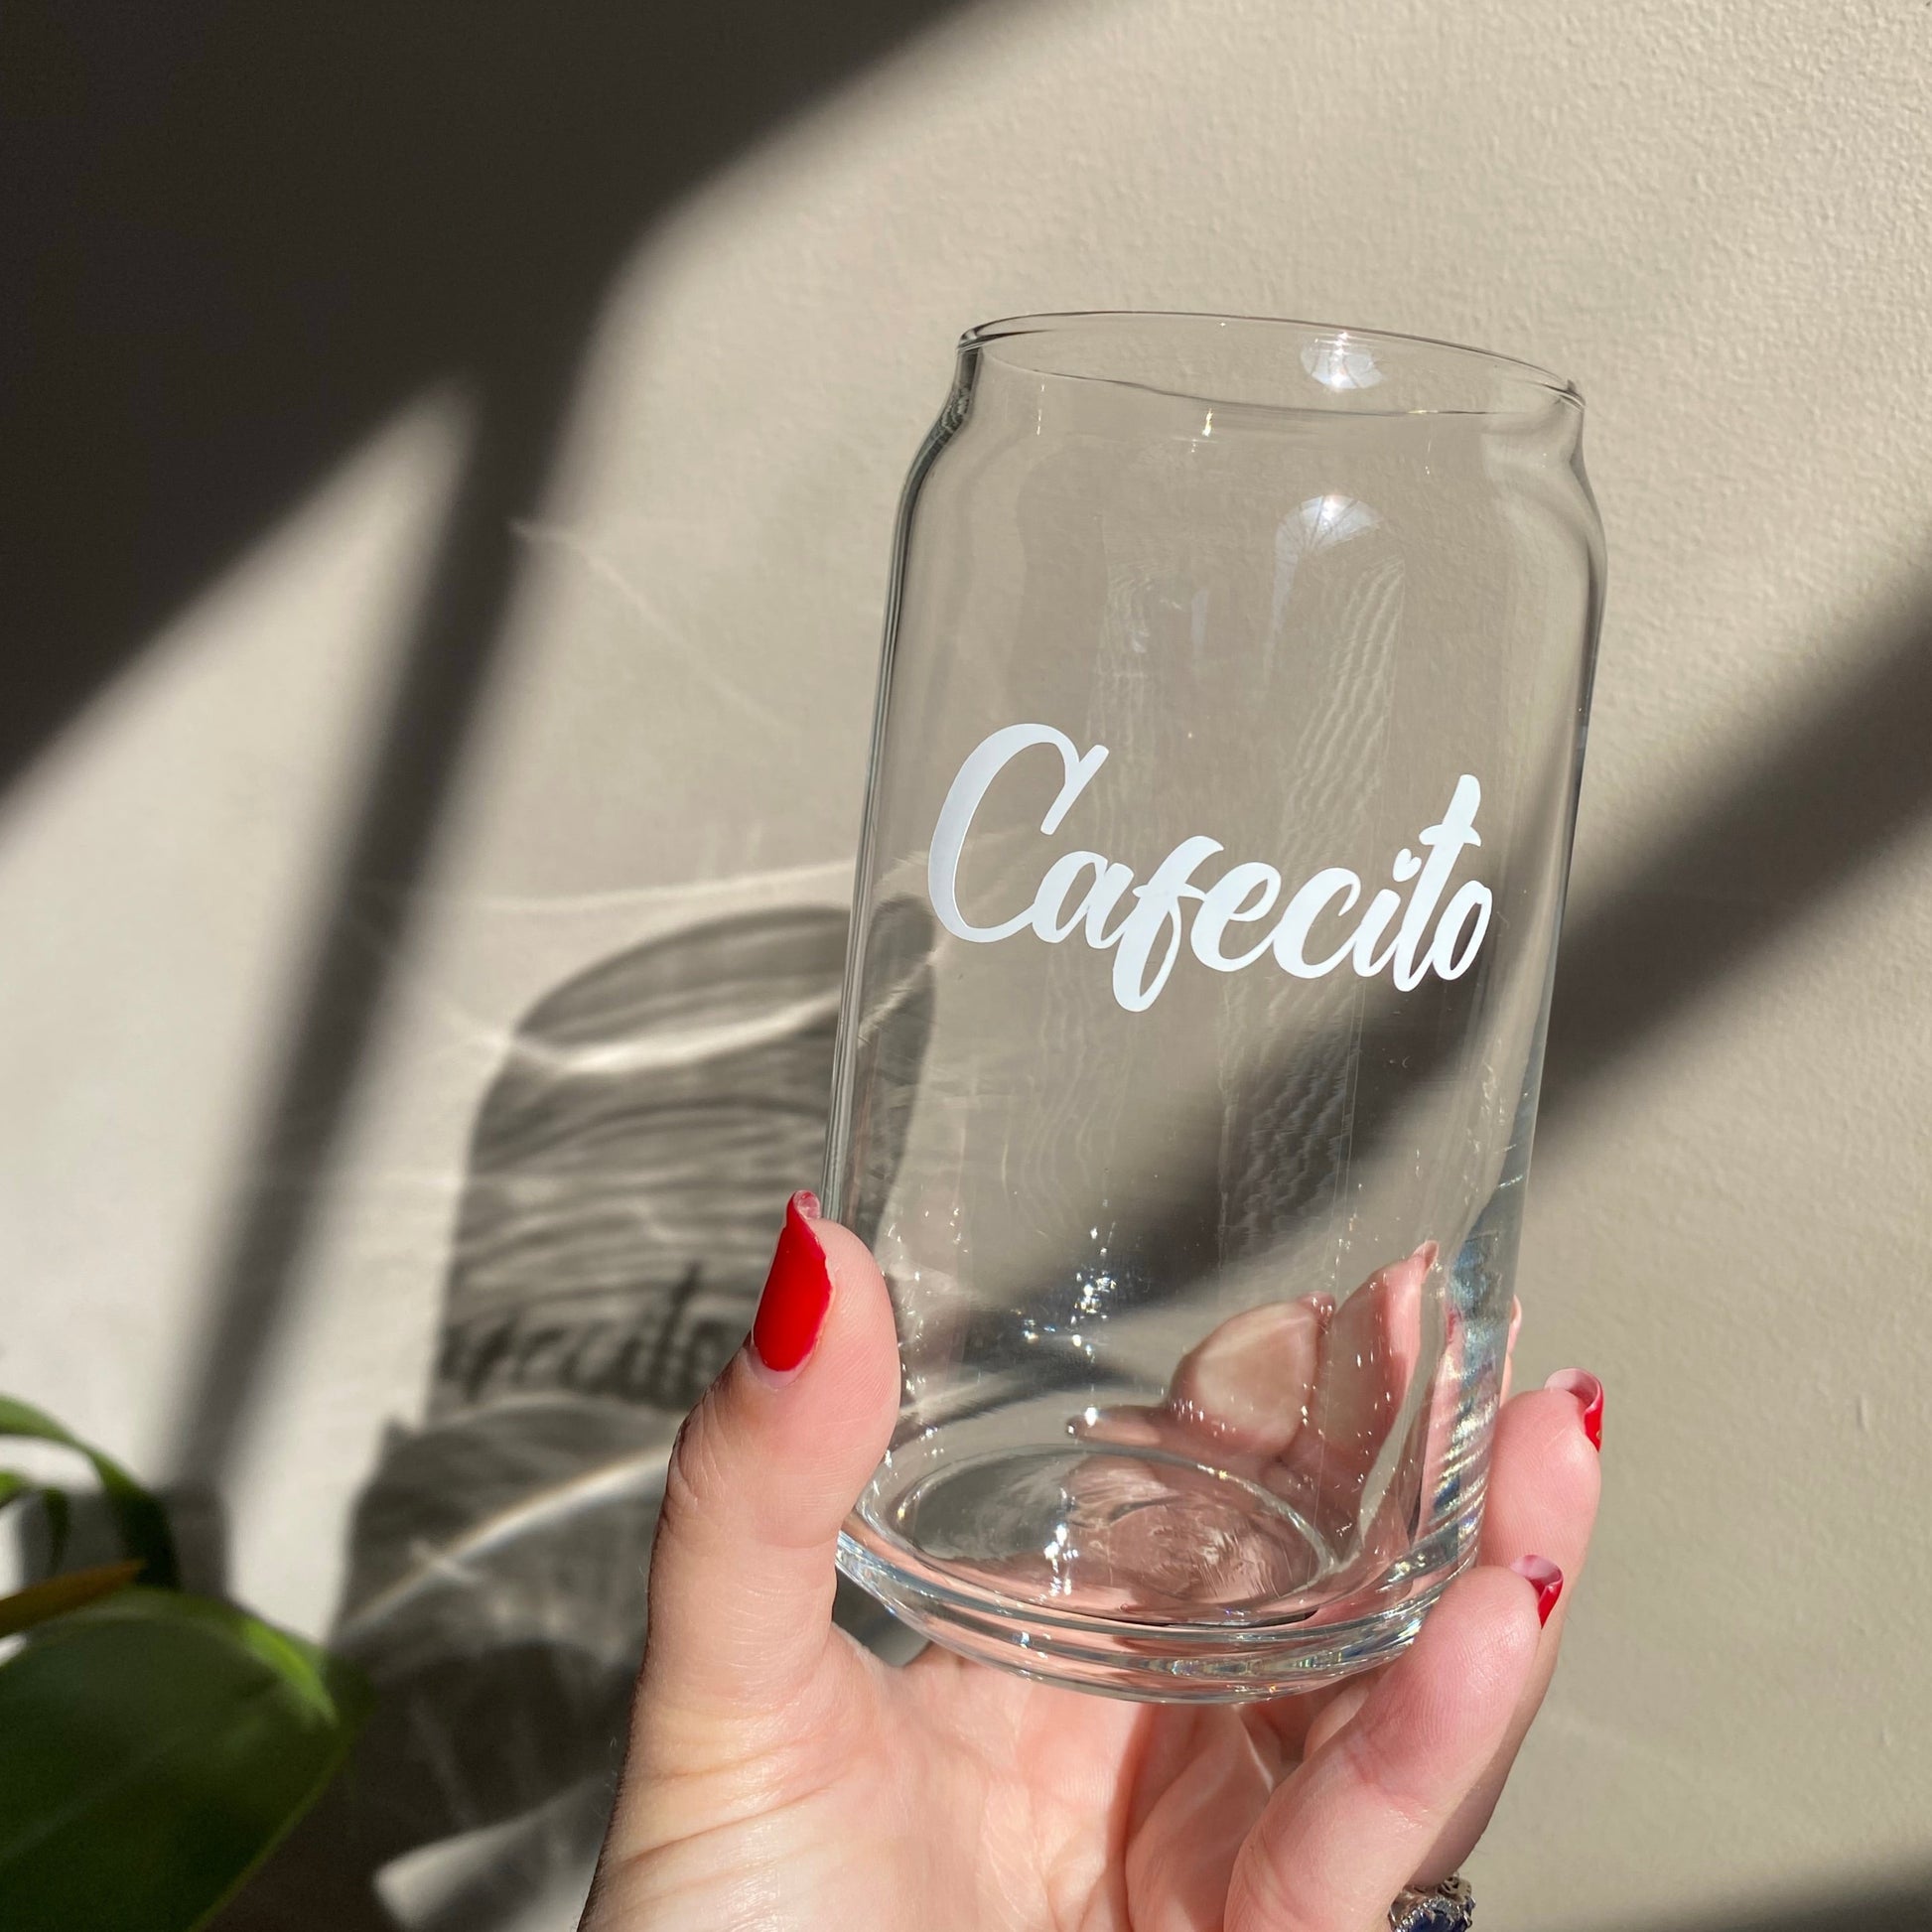 Cafecito glass can